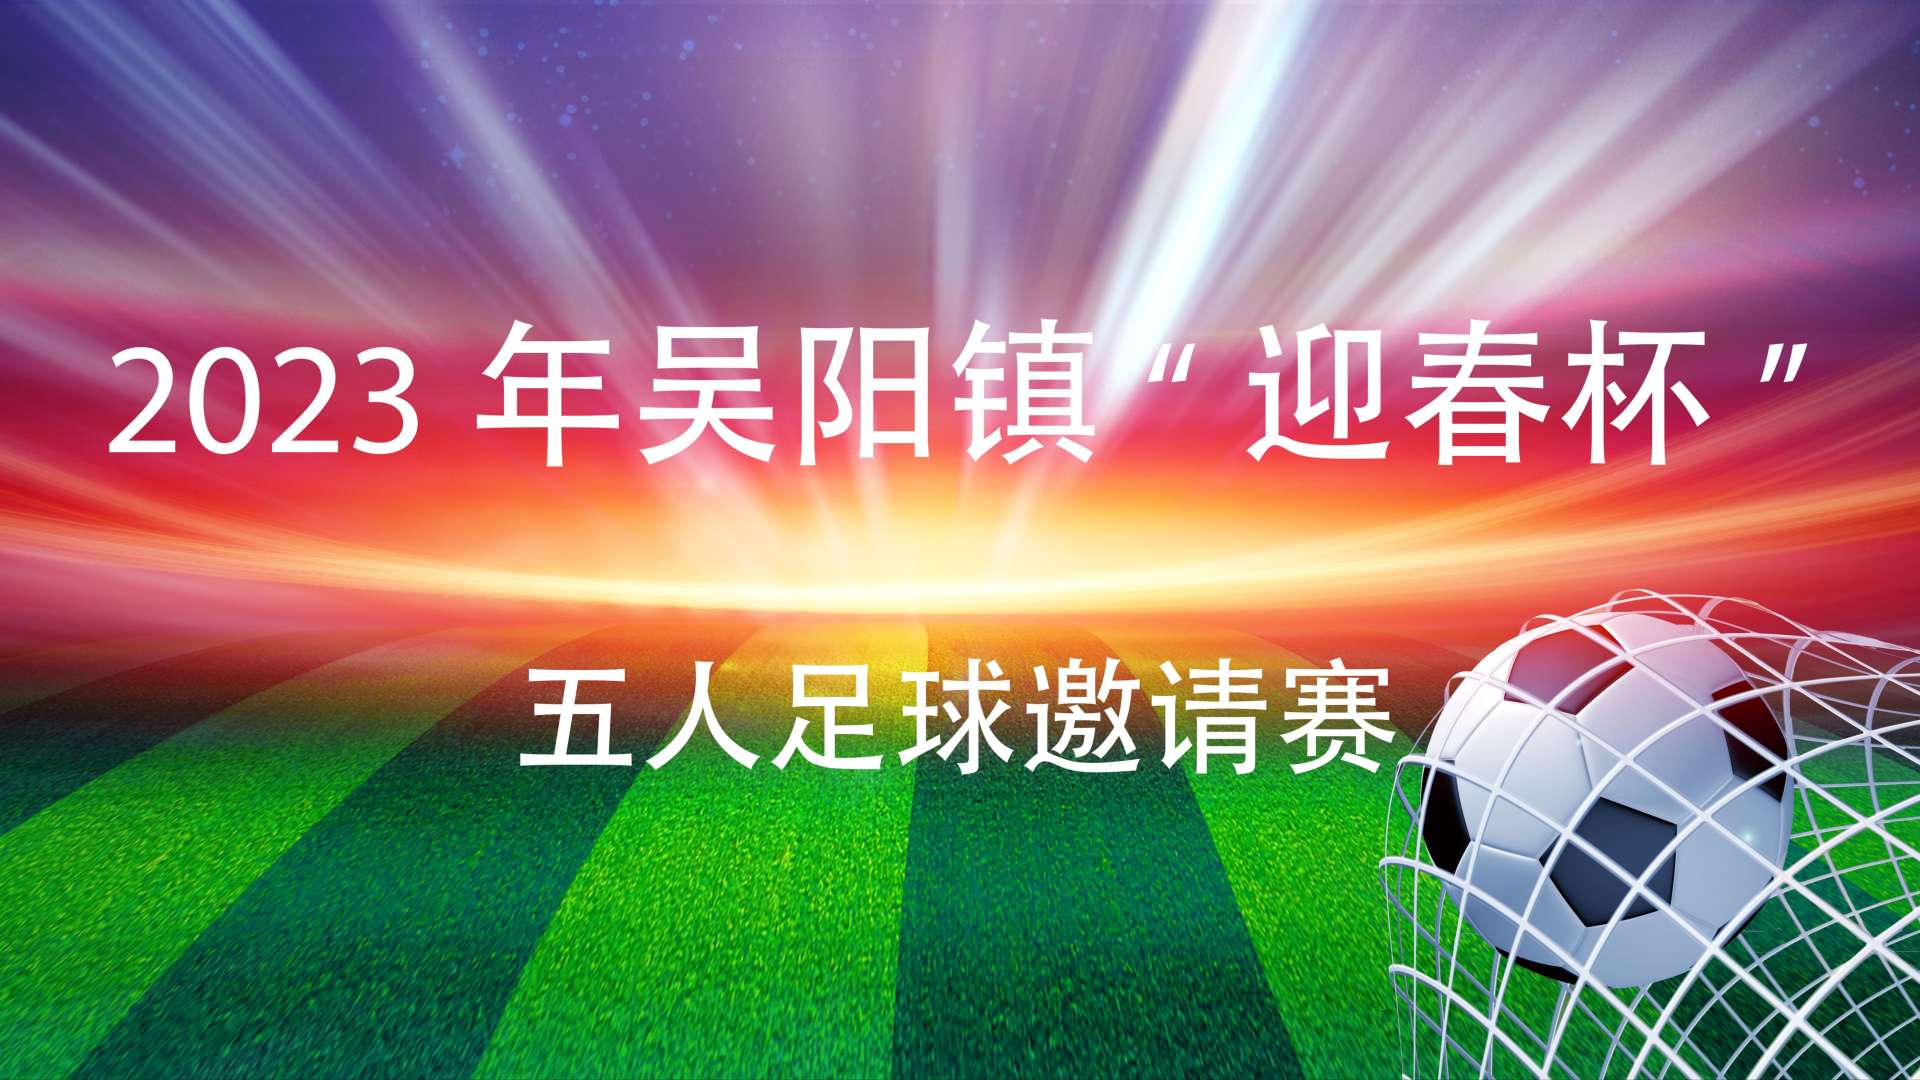 2023年吴阳镇“迎春杯”五人足球邀请赛